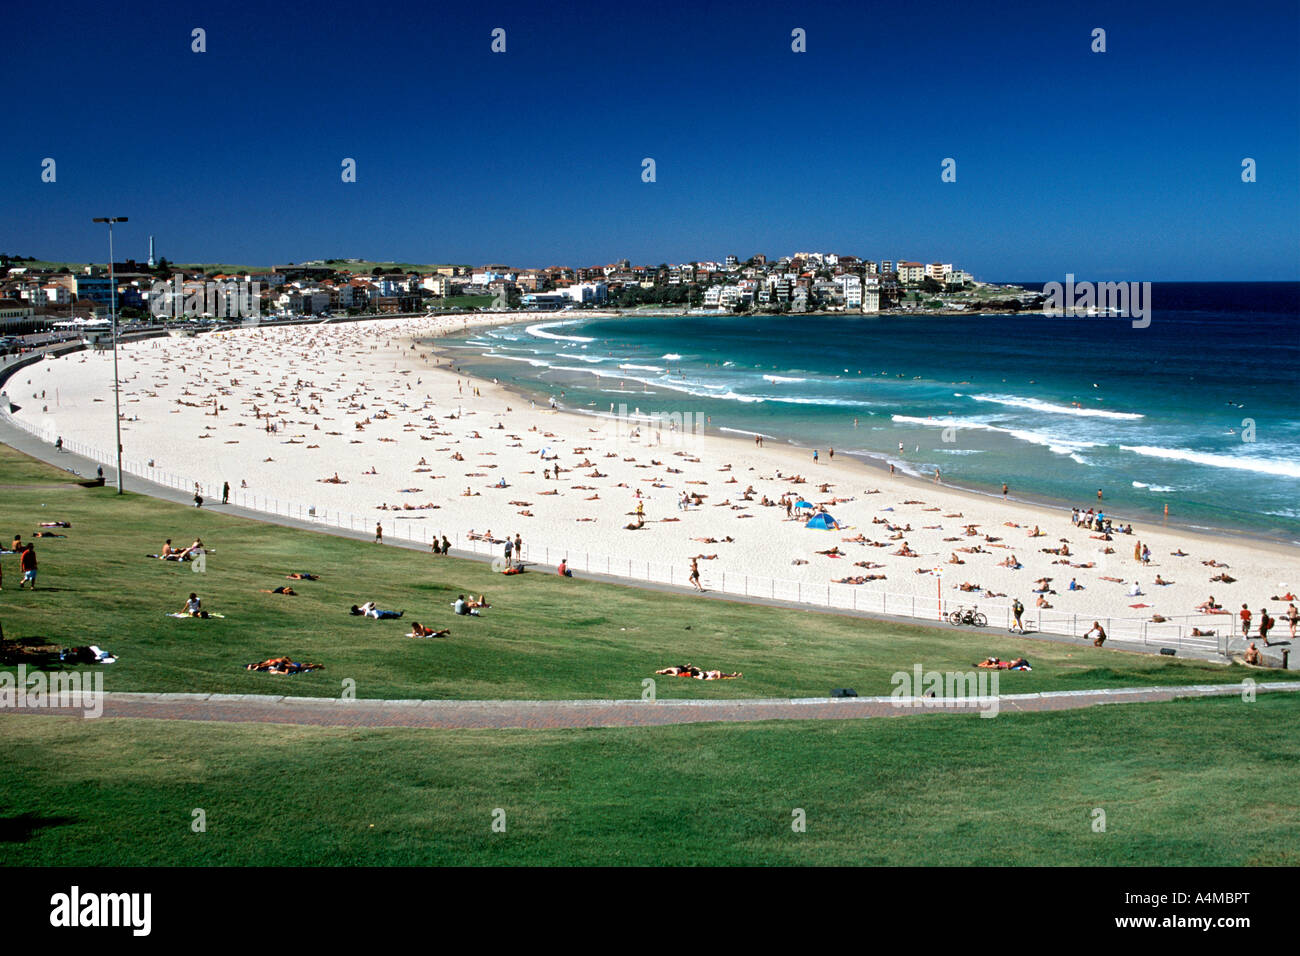 La plage de Bondi à Sydney en Australie. Banque D'Images